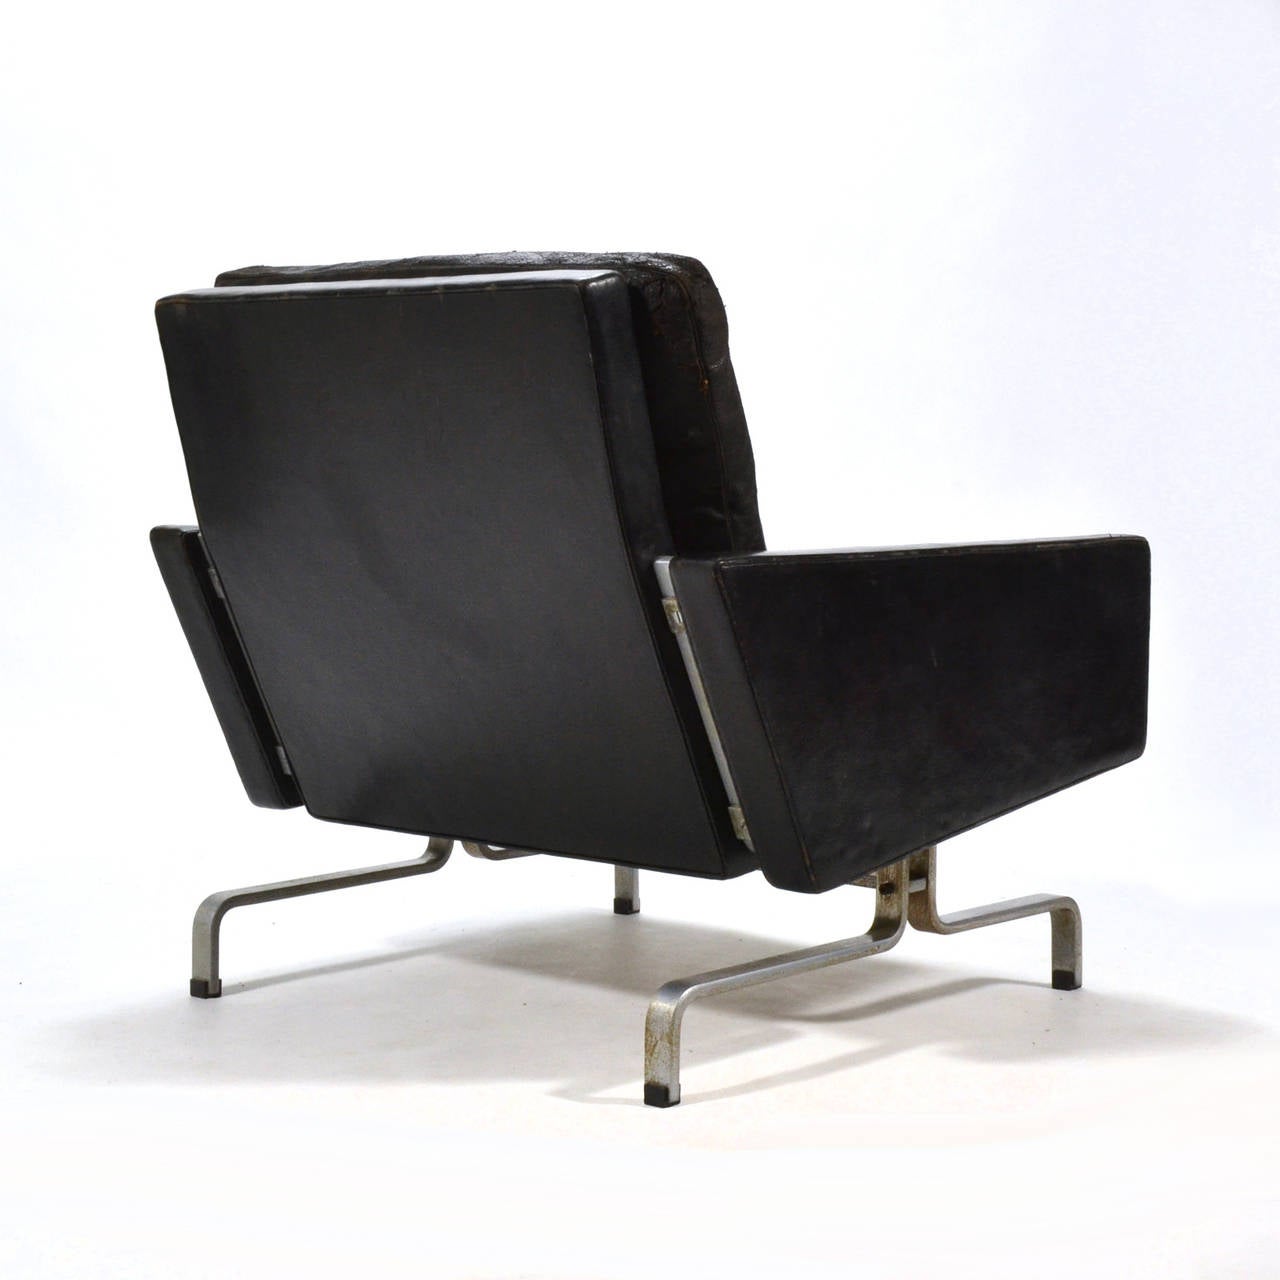 Danish Poul Kjaerholm PK-31/1 Lounge Chair by E. Kold Christensen